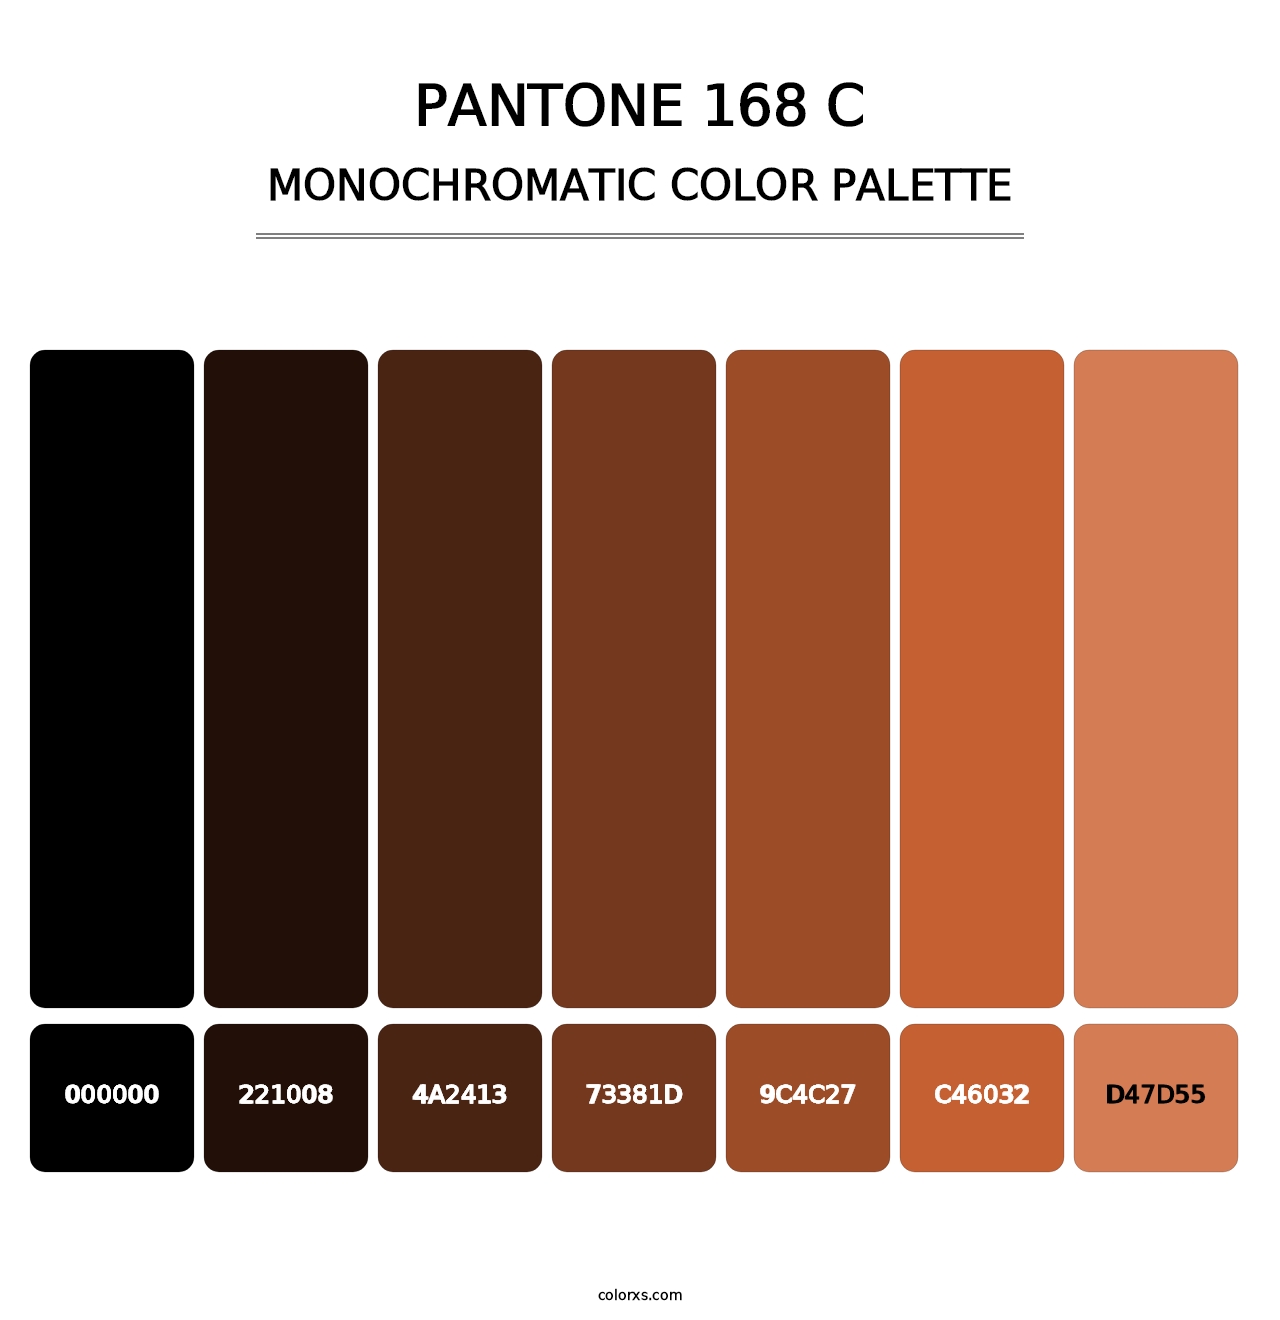 PANTONE 168 C - Monochromatic Color Palette